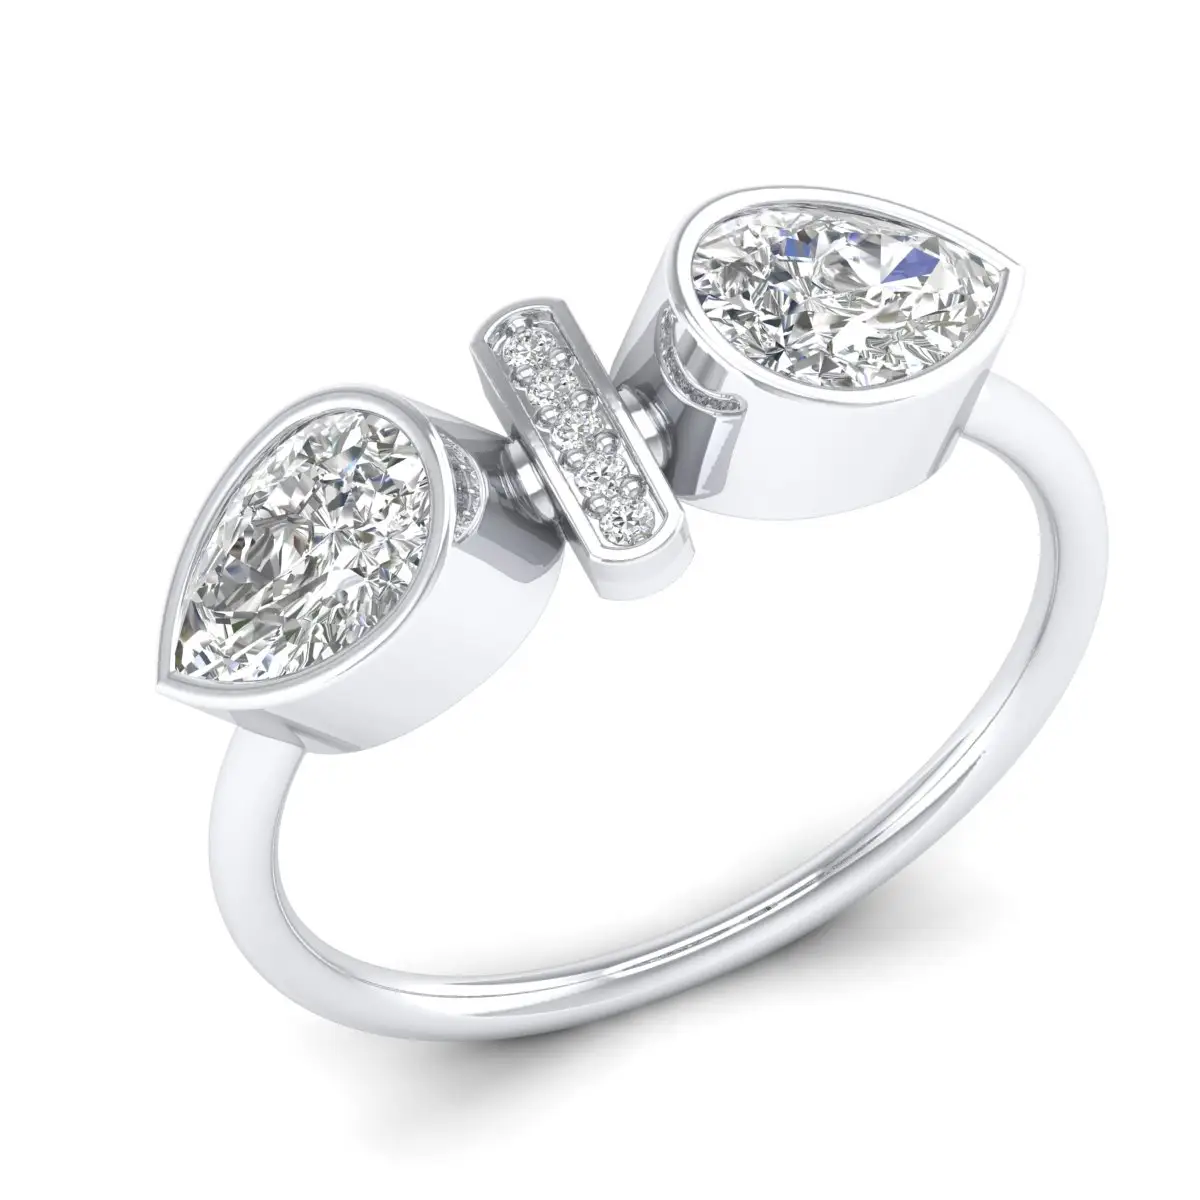 REYES ขายส่งที่กําหนดเอง 925 เงินสเตอร์ลิง Moissanite อินิยมแหวนสัญญาผู้หญิงคู่ลูกแพร์ตัดหินงานแต่งงานเครื่องประดับ Fine